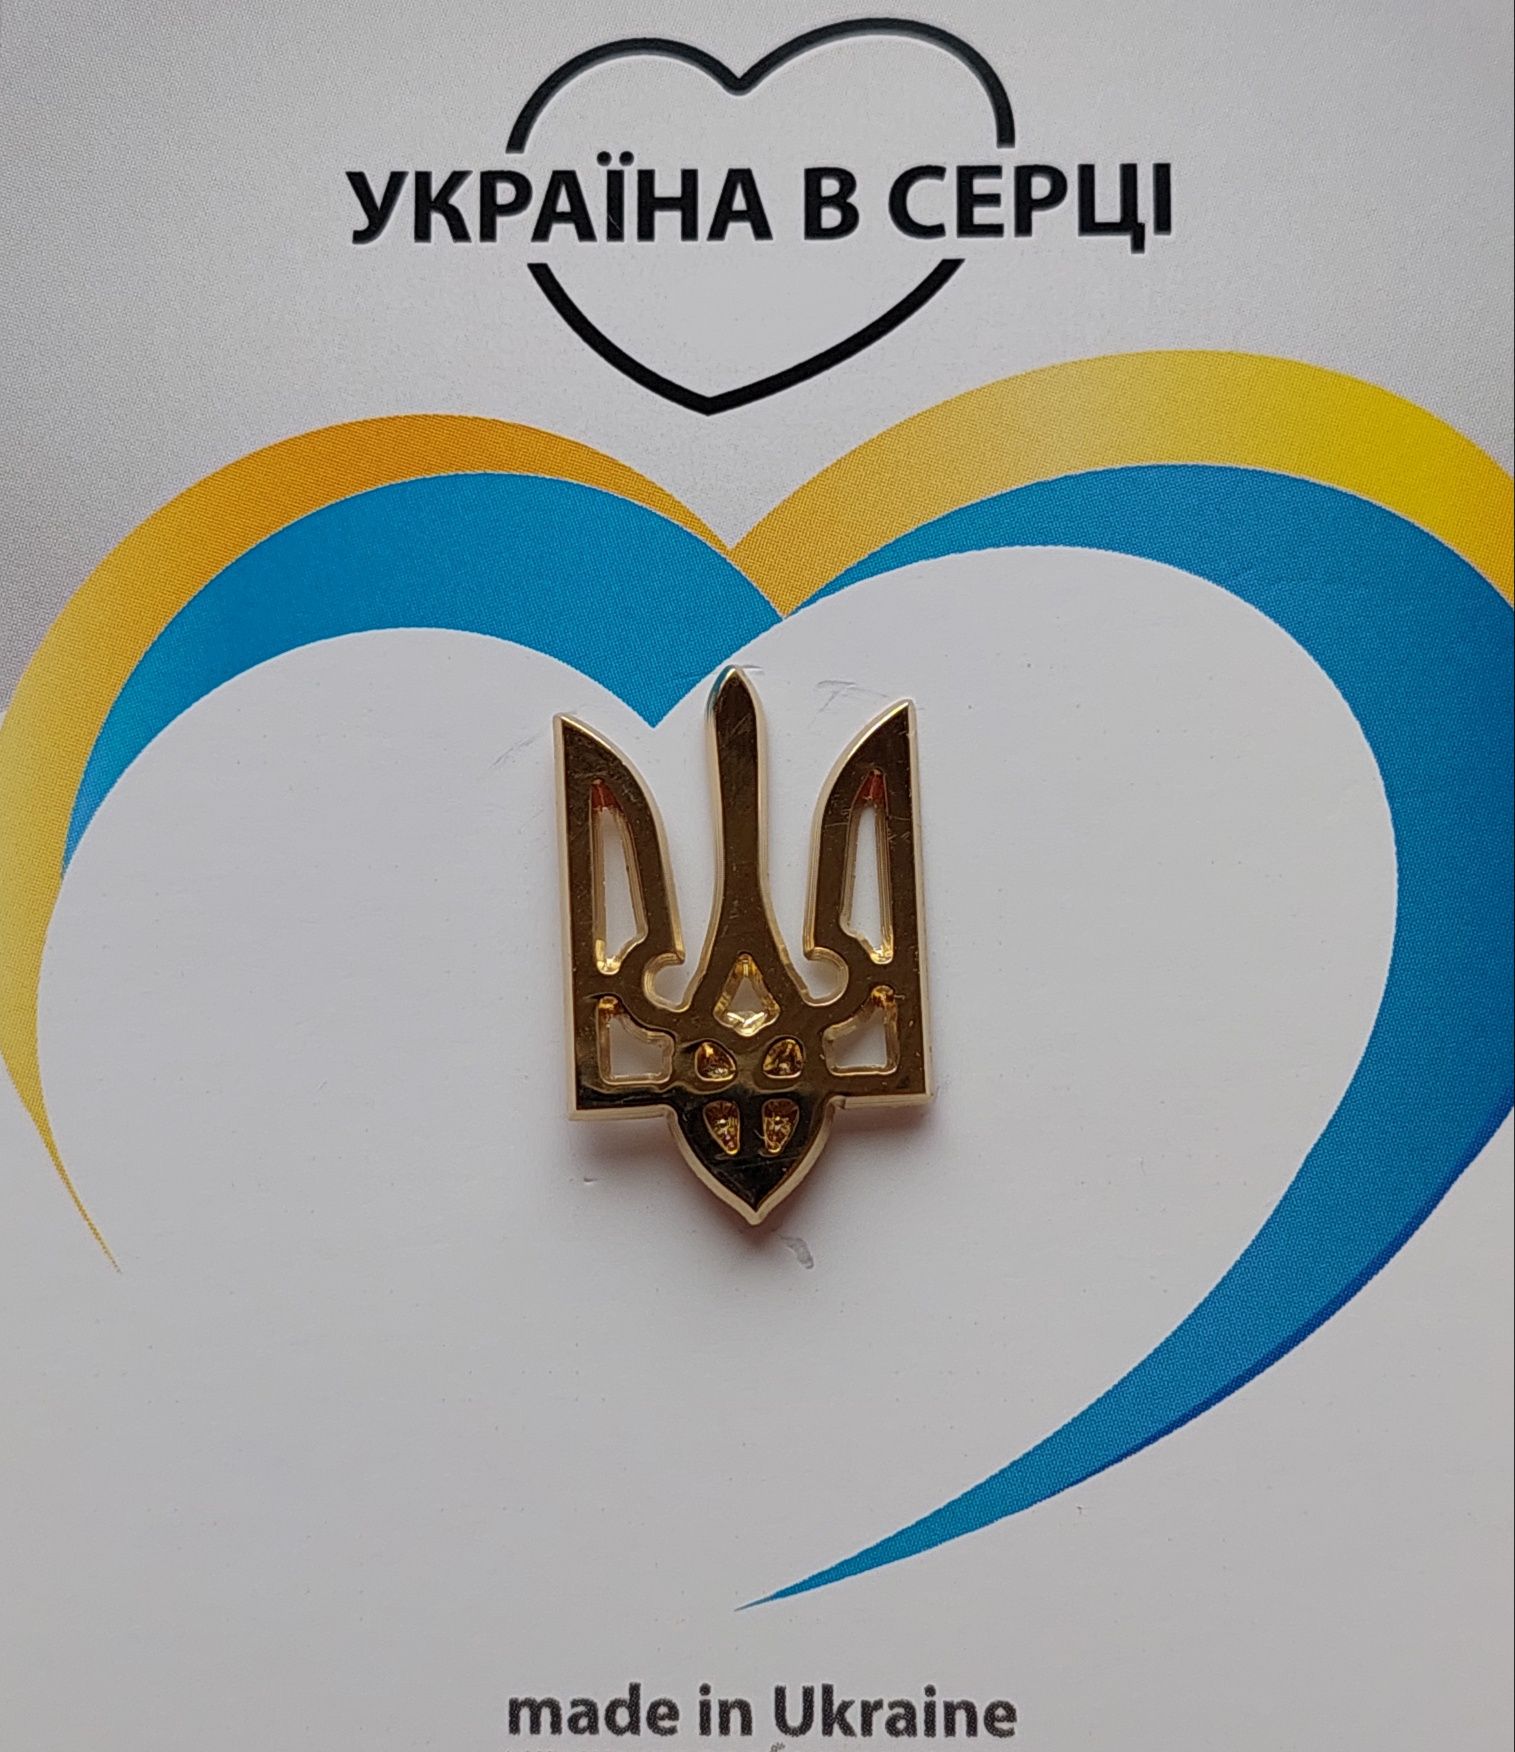 Патріотичні значки України (пін, тризуб, герб) - 300 грн за 3 шт